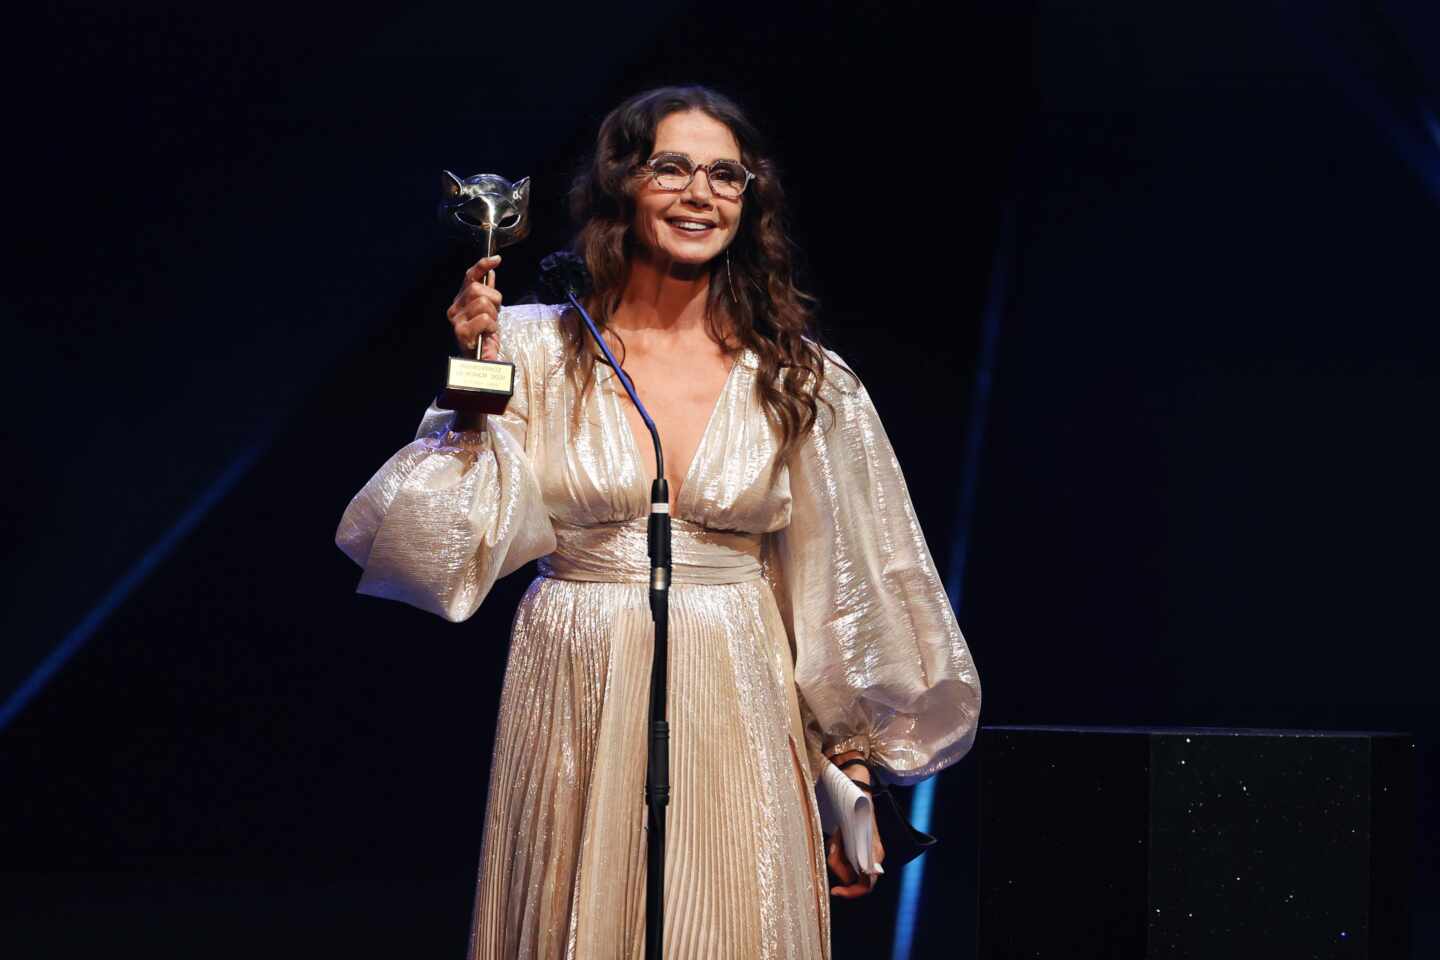 La actriz Victoria Abril tras recibir el "Premio Feroz de Honor 2021" durante la ceremonia de entrega de la octava edición de los Premios Feroz que se celebra este martes en el Teatro Coliseum, en Madrid.